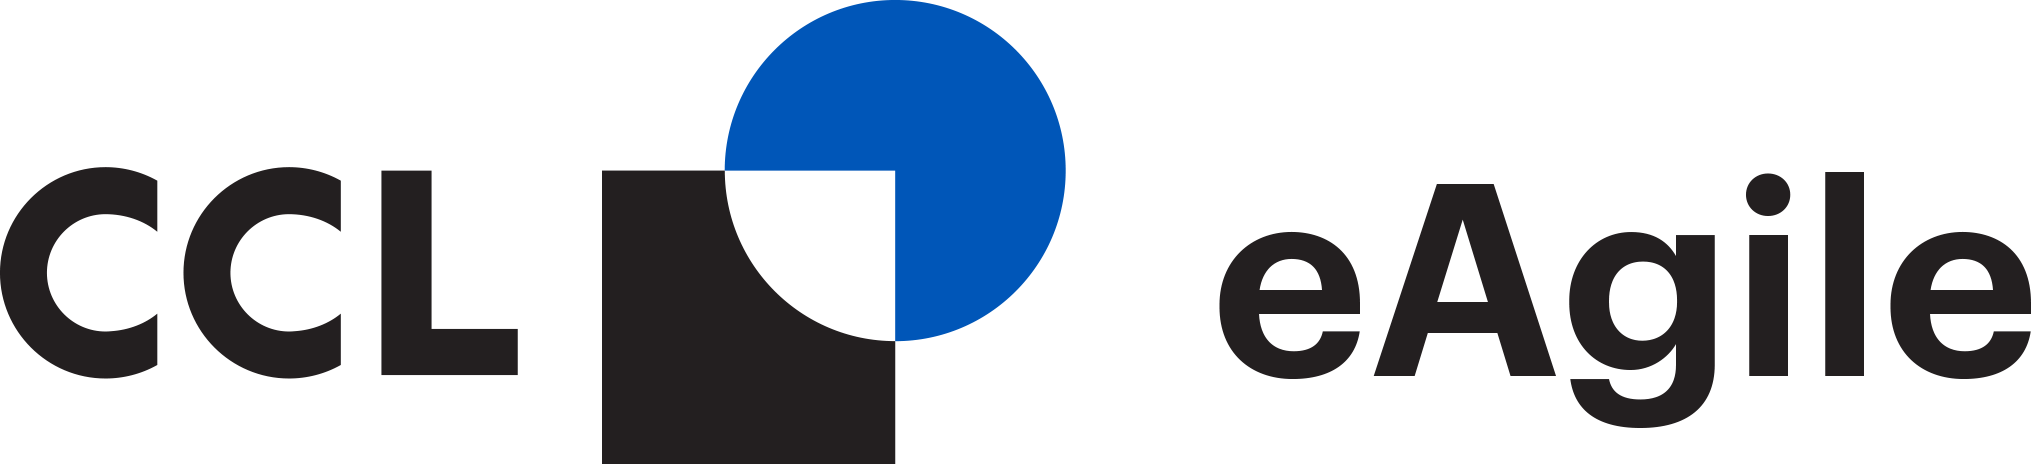 CCL eAgile_Logo